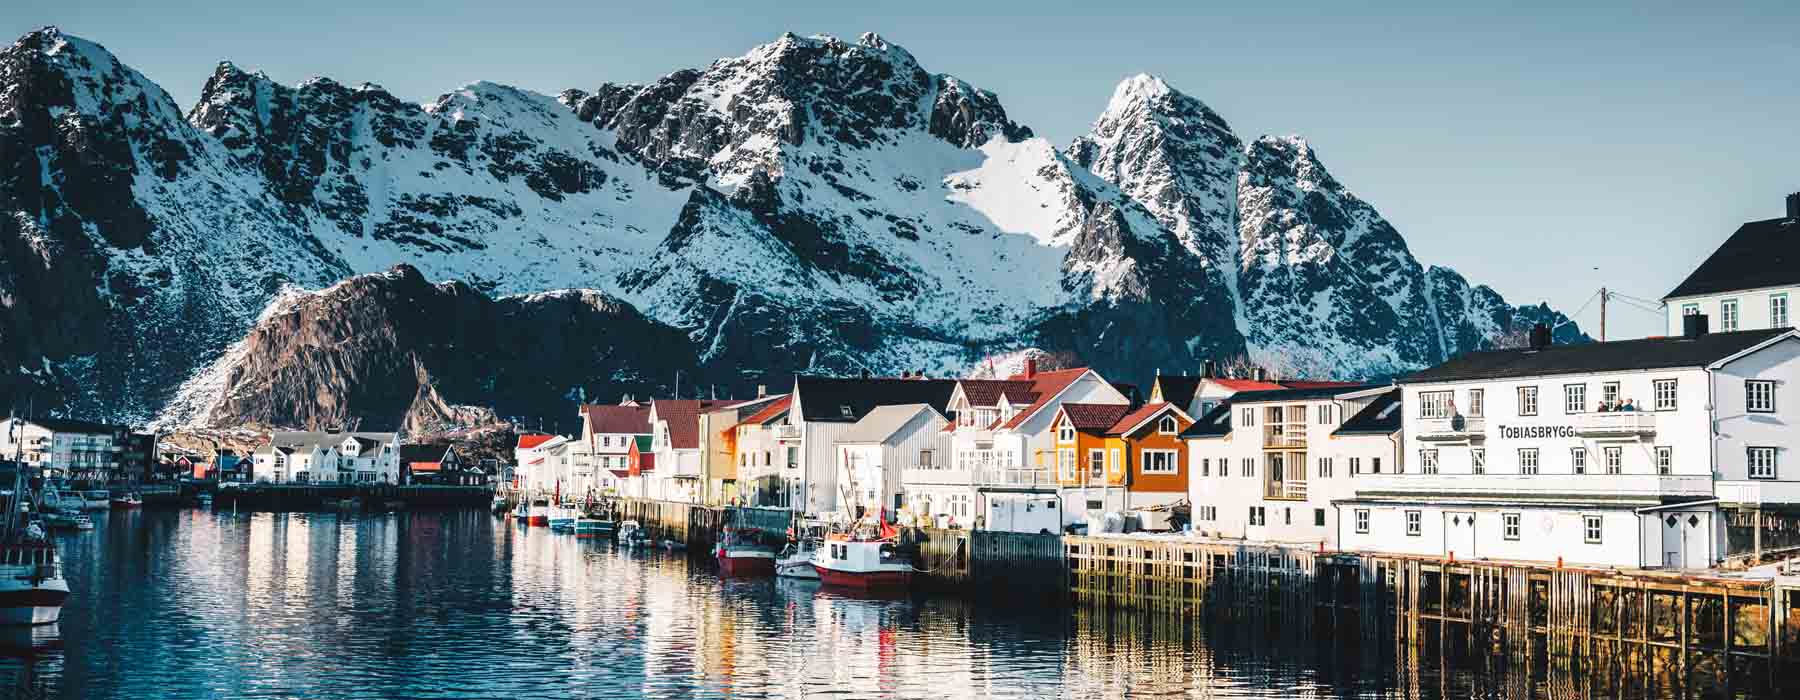 Norway<br class="hidden-md hidden-lg" /> Christmas Holidays